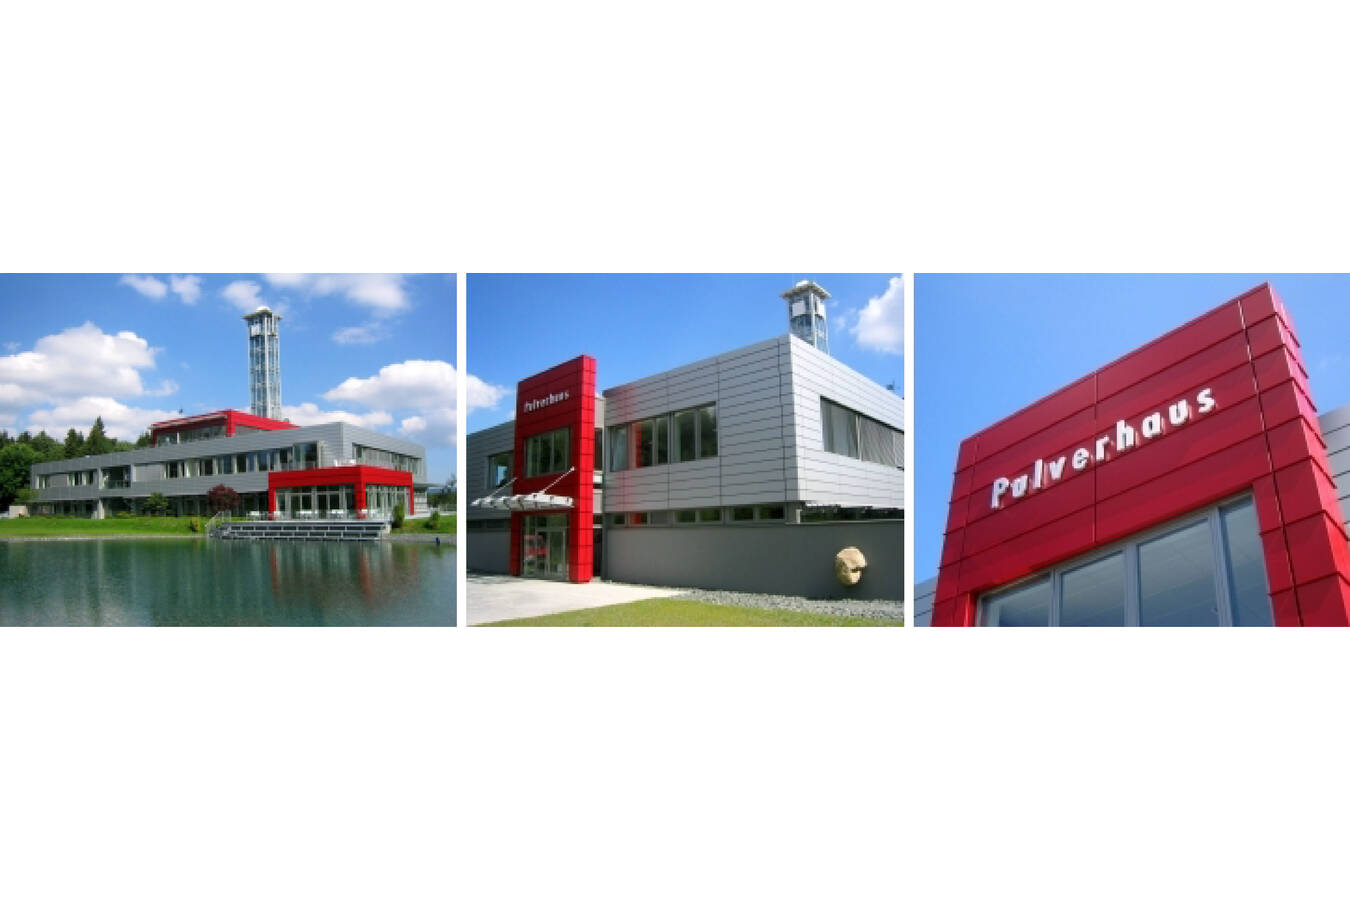 Sympatec GmbH sucht Servicetechniker*in Für unsere Firmenzentrale ”Pulverhaus” in Clausthal-Zellerfeld suchen wir zum nächstmöglichen Zeitpunkt eine*n Servicetechniker*in